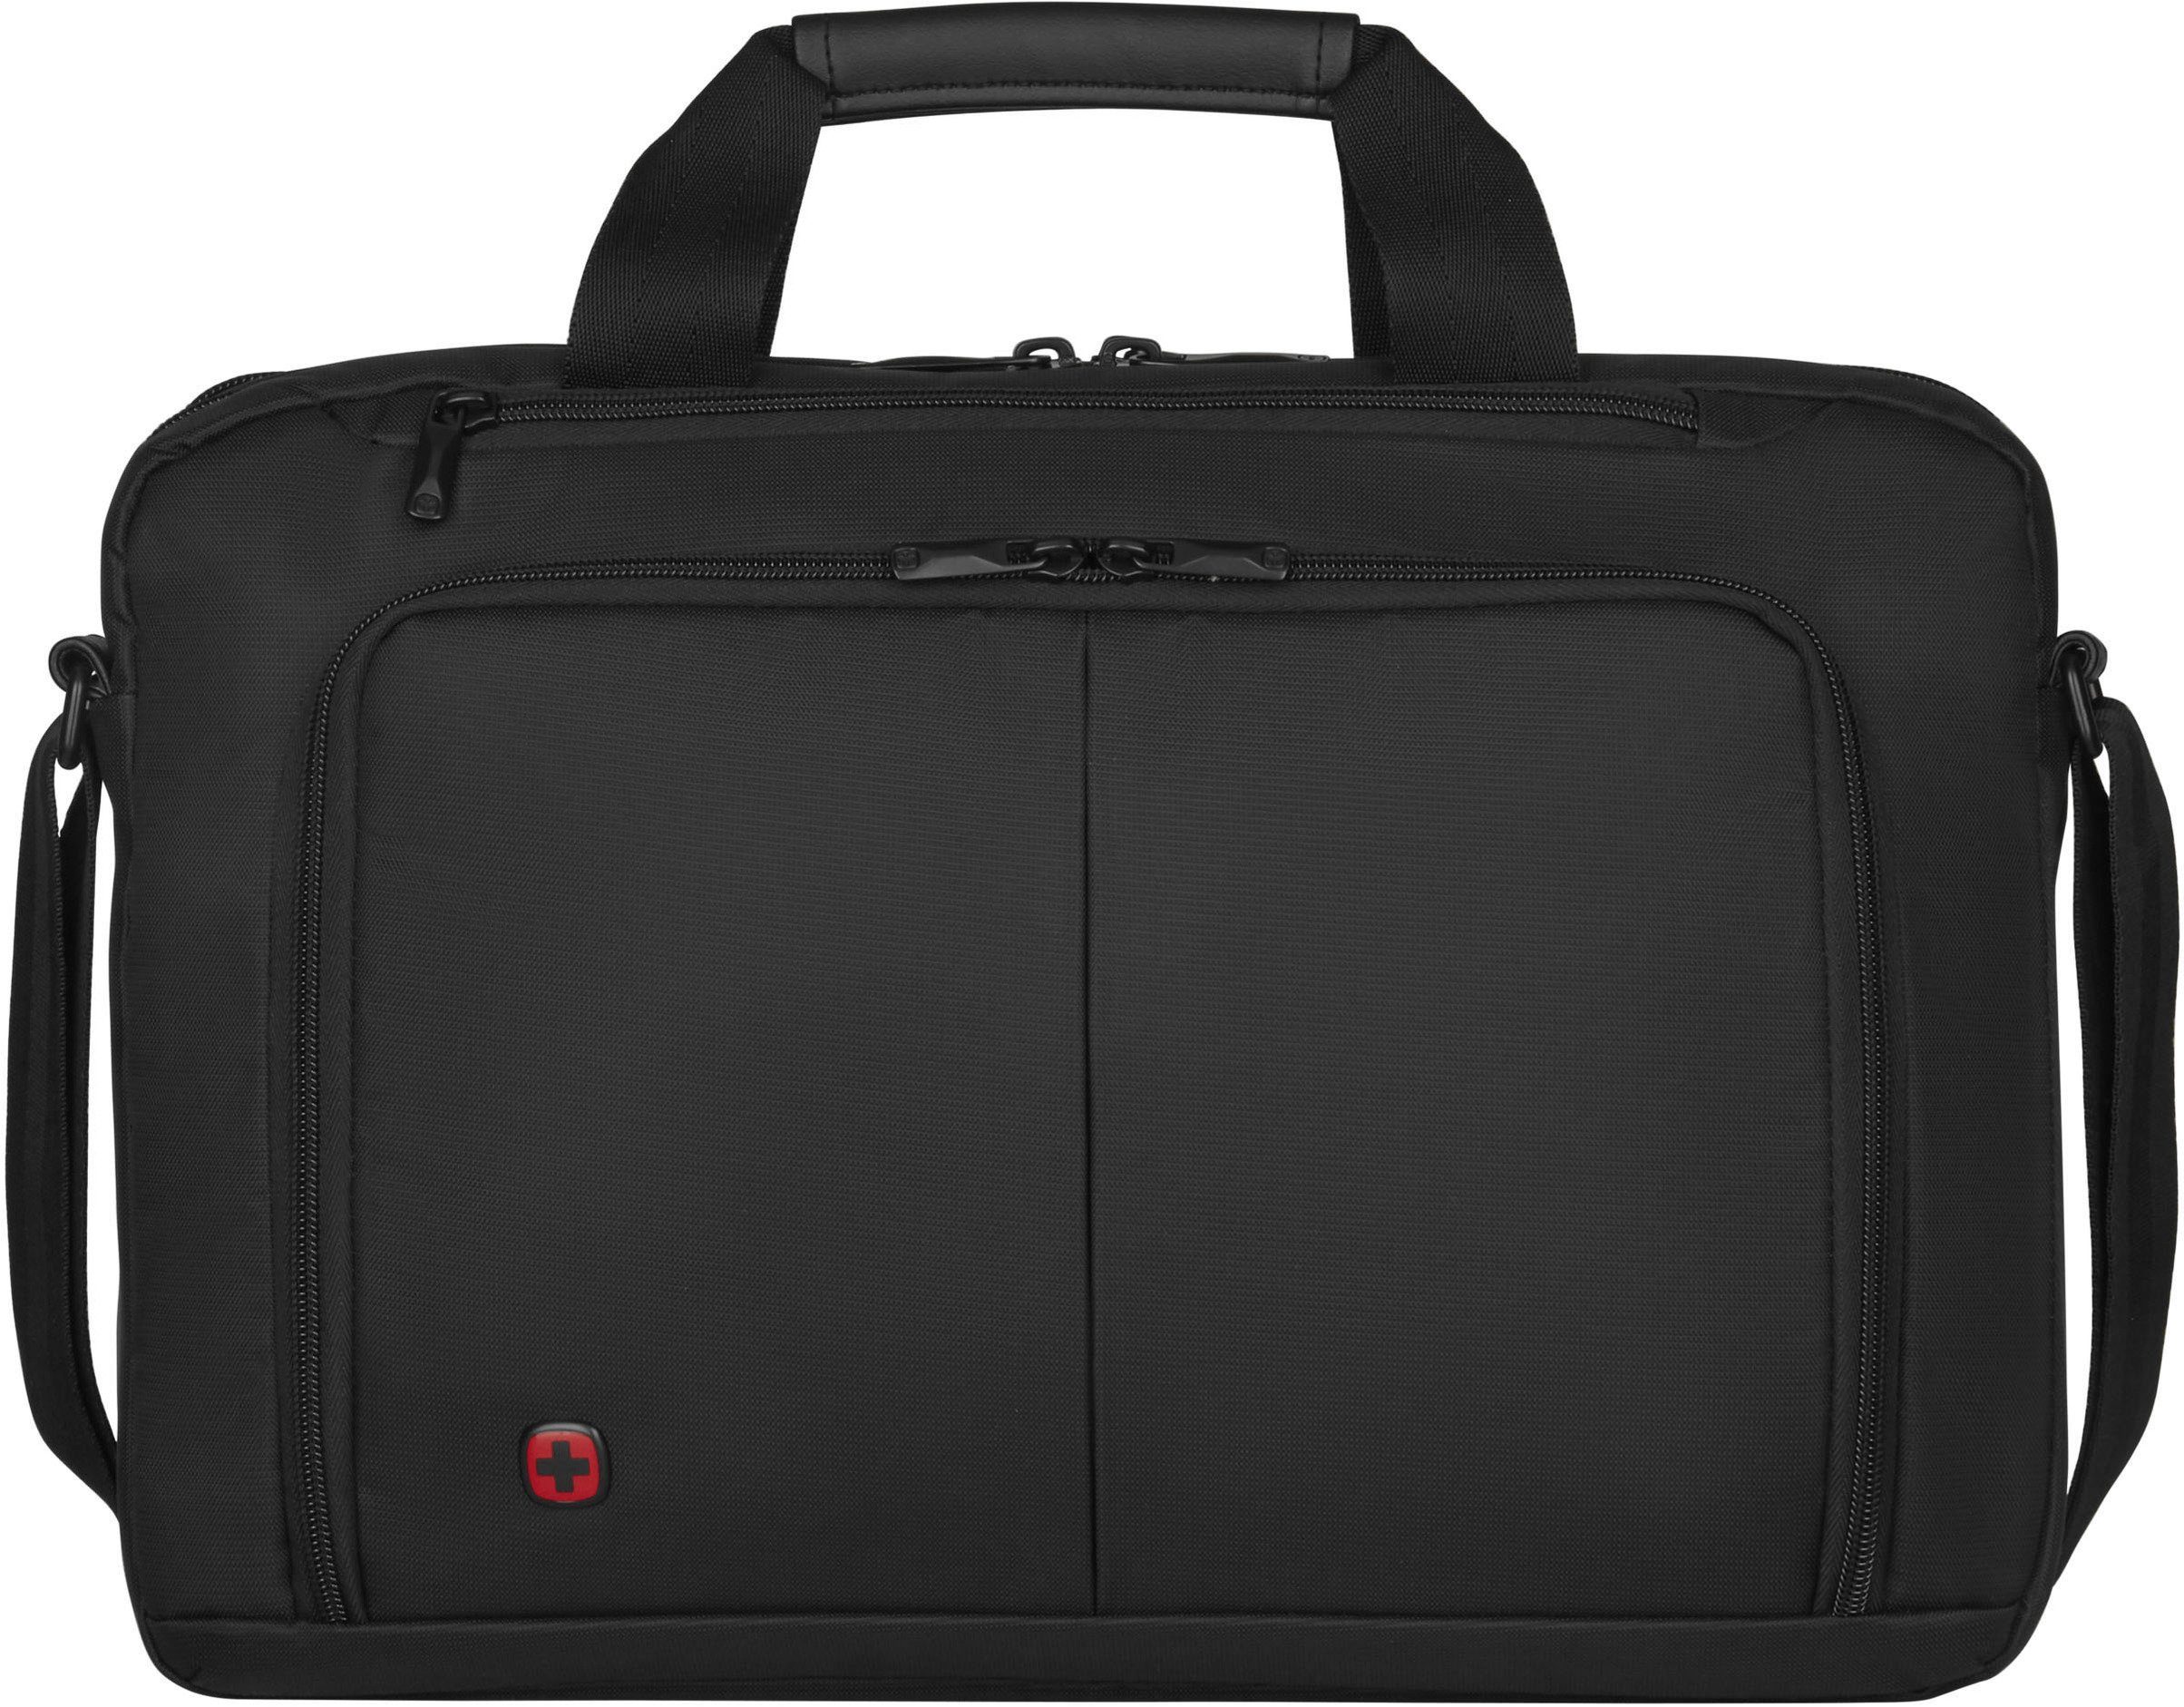 Wenger Laptoptasche Source, schwarz, mit 16-Zoll Laptopfach und  zusätzlichem 10-Zoll Tabletfach, Trolley-Aufsteck-System für komfortables  Reisen mit mehreren Gepäckstücken